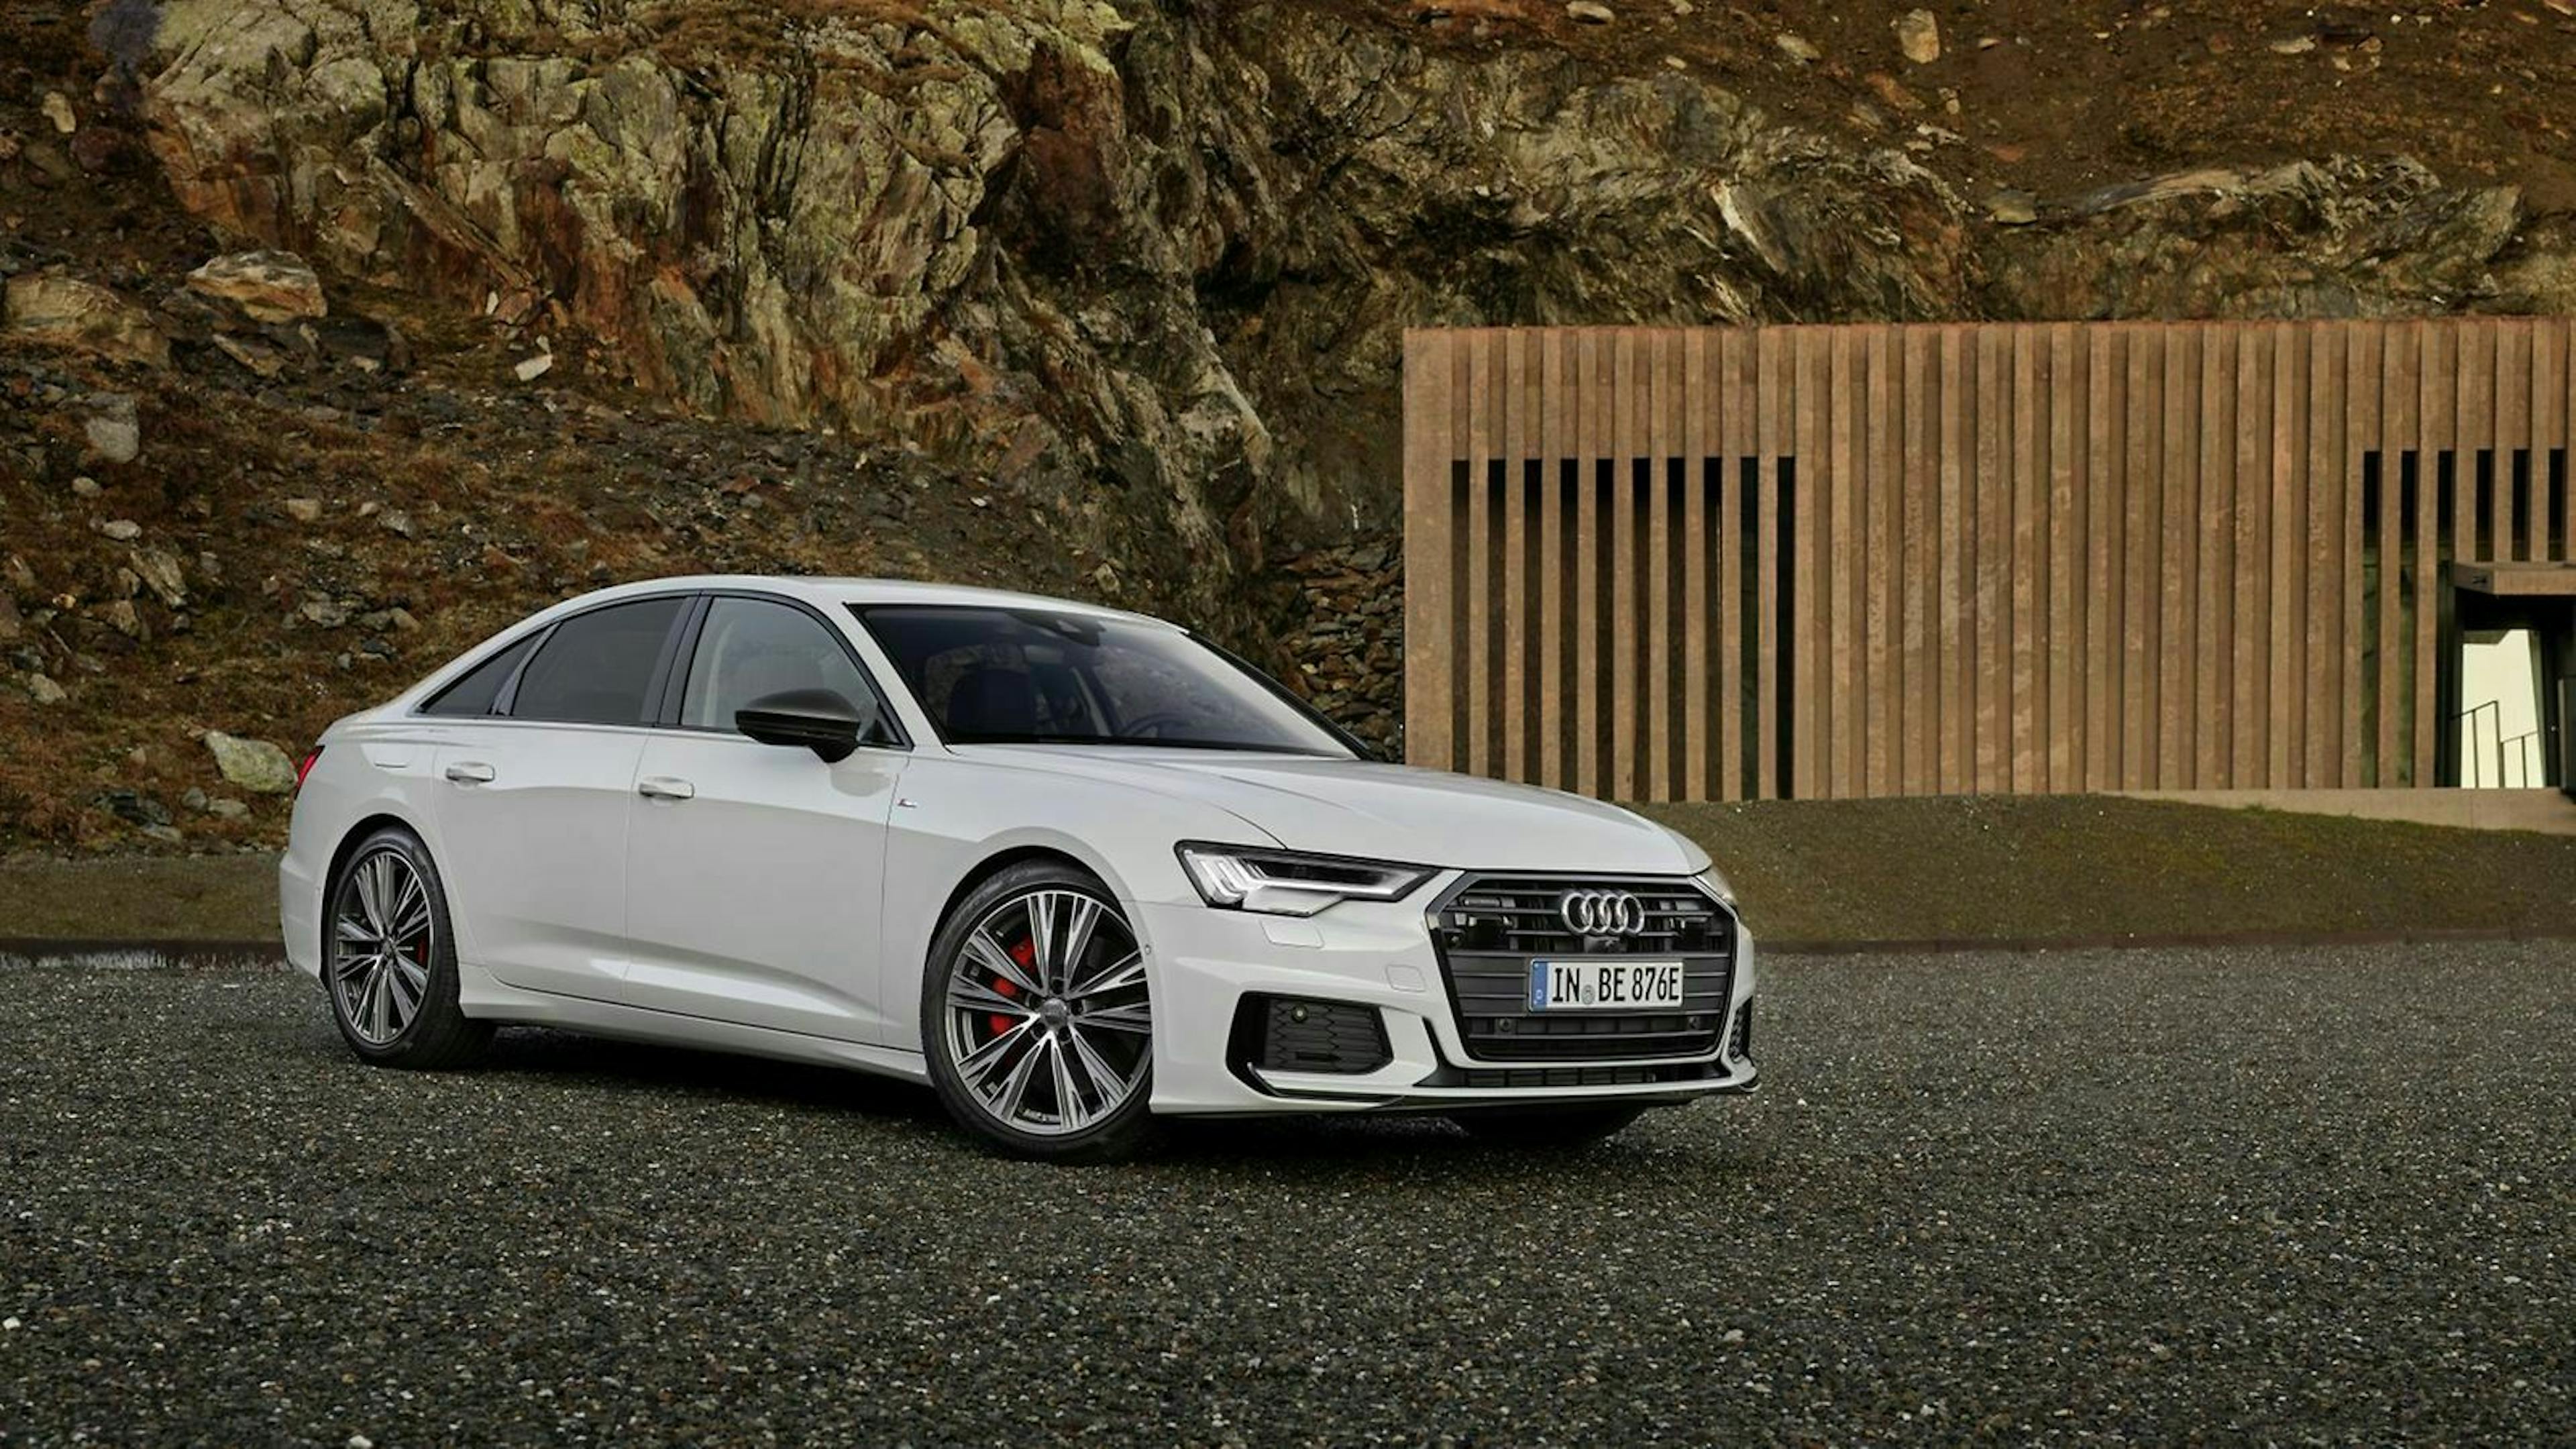 367 PS Systemleistung und 53 Kilometer elektrische Reichweite: Audi elektrifiziert seine Mittelklasse-Limousine A6